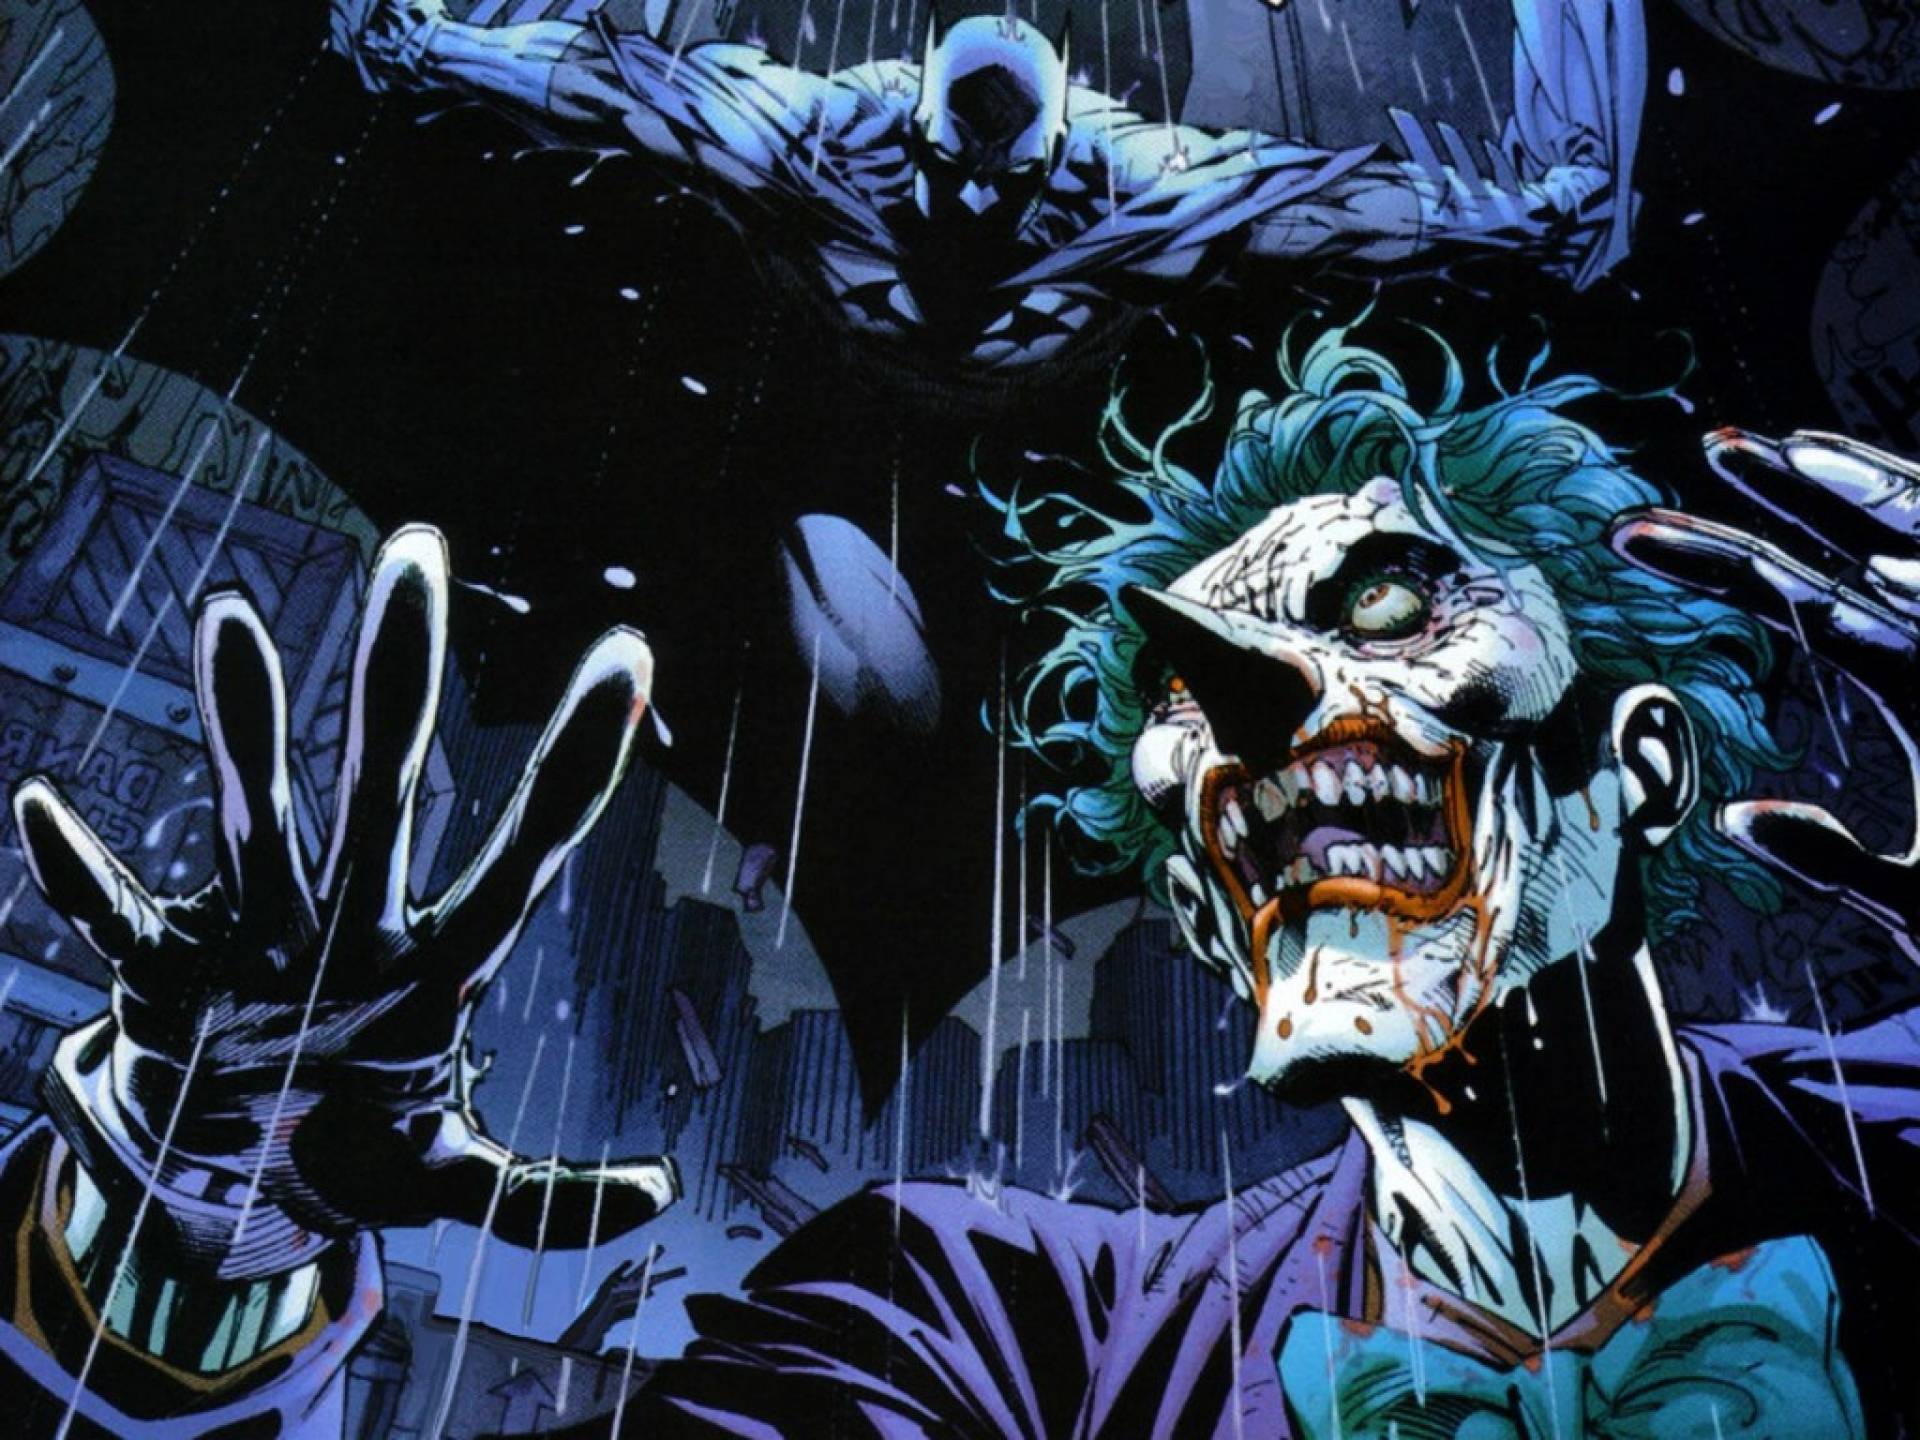 Marvelous The Joker Comic Wallpaper HD for Imac 1920x1440PX